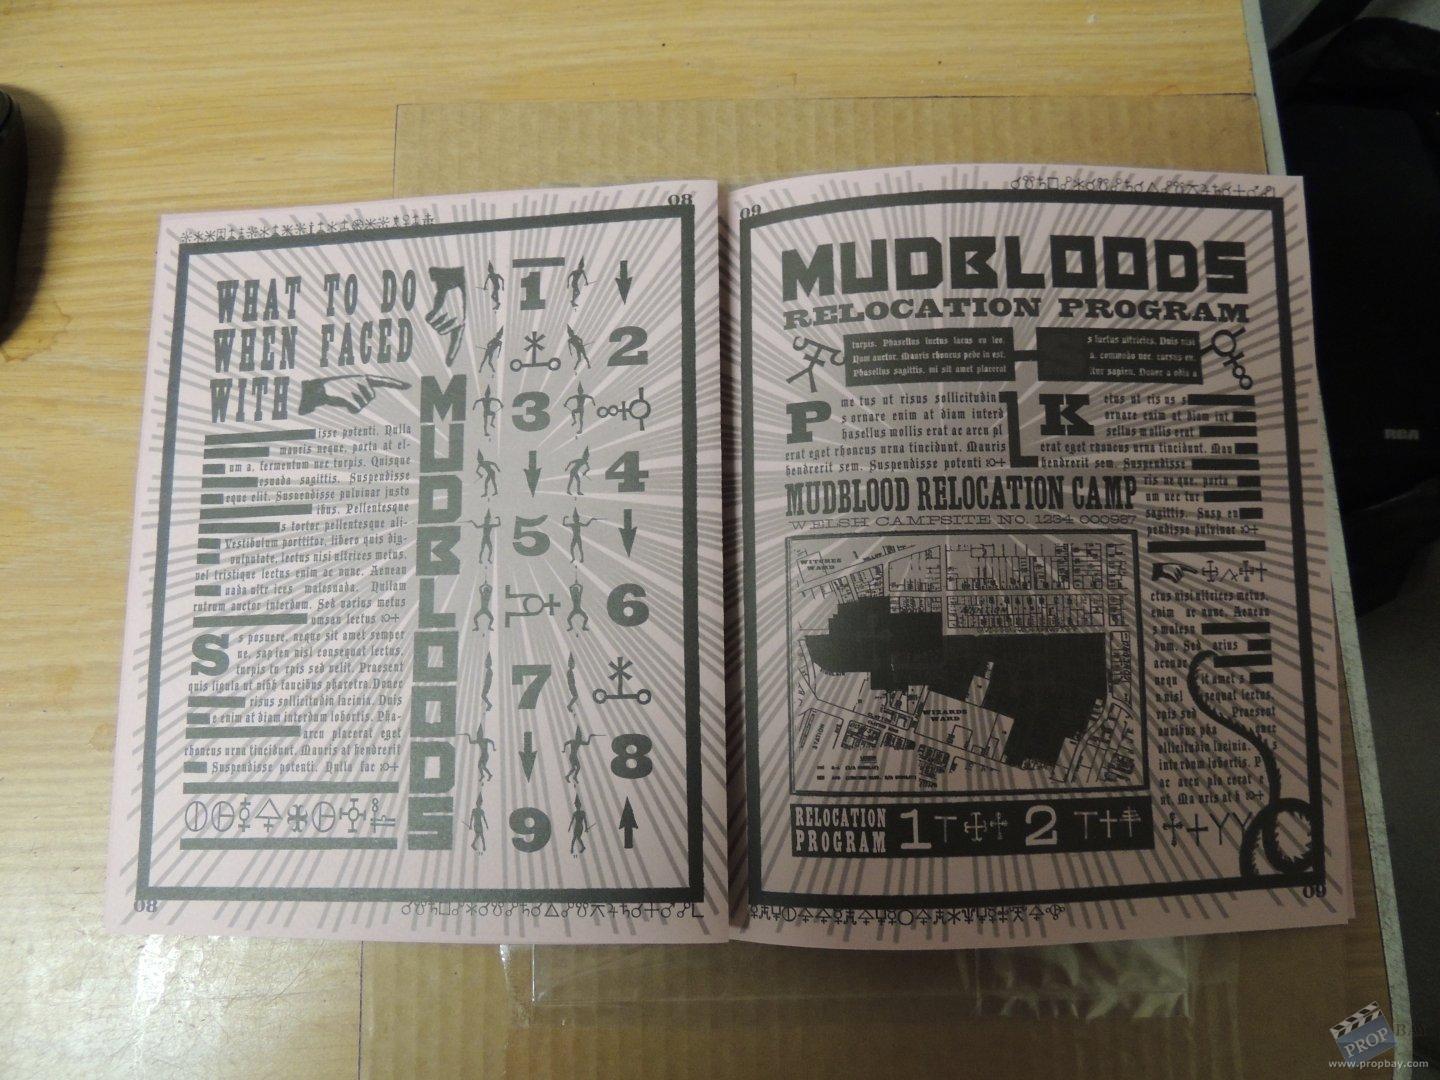 The Mudbloods